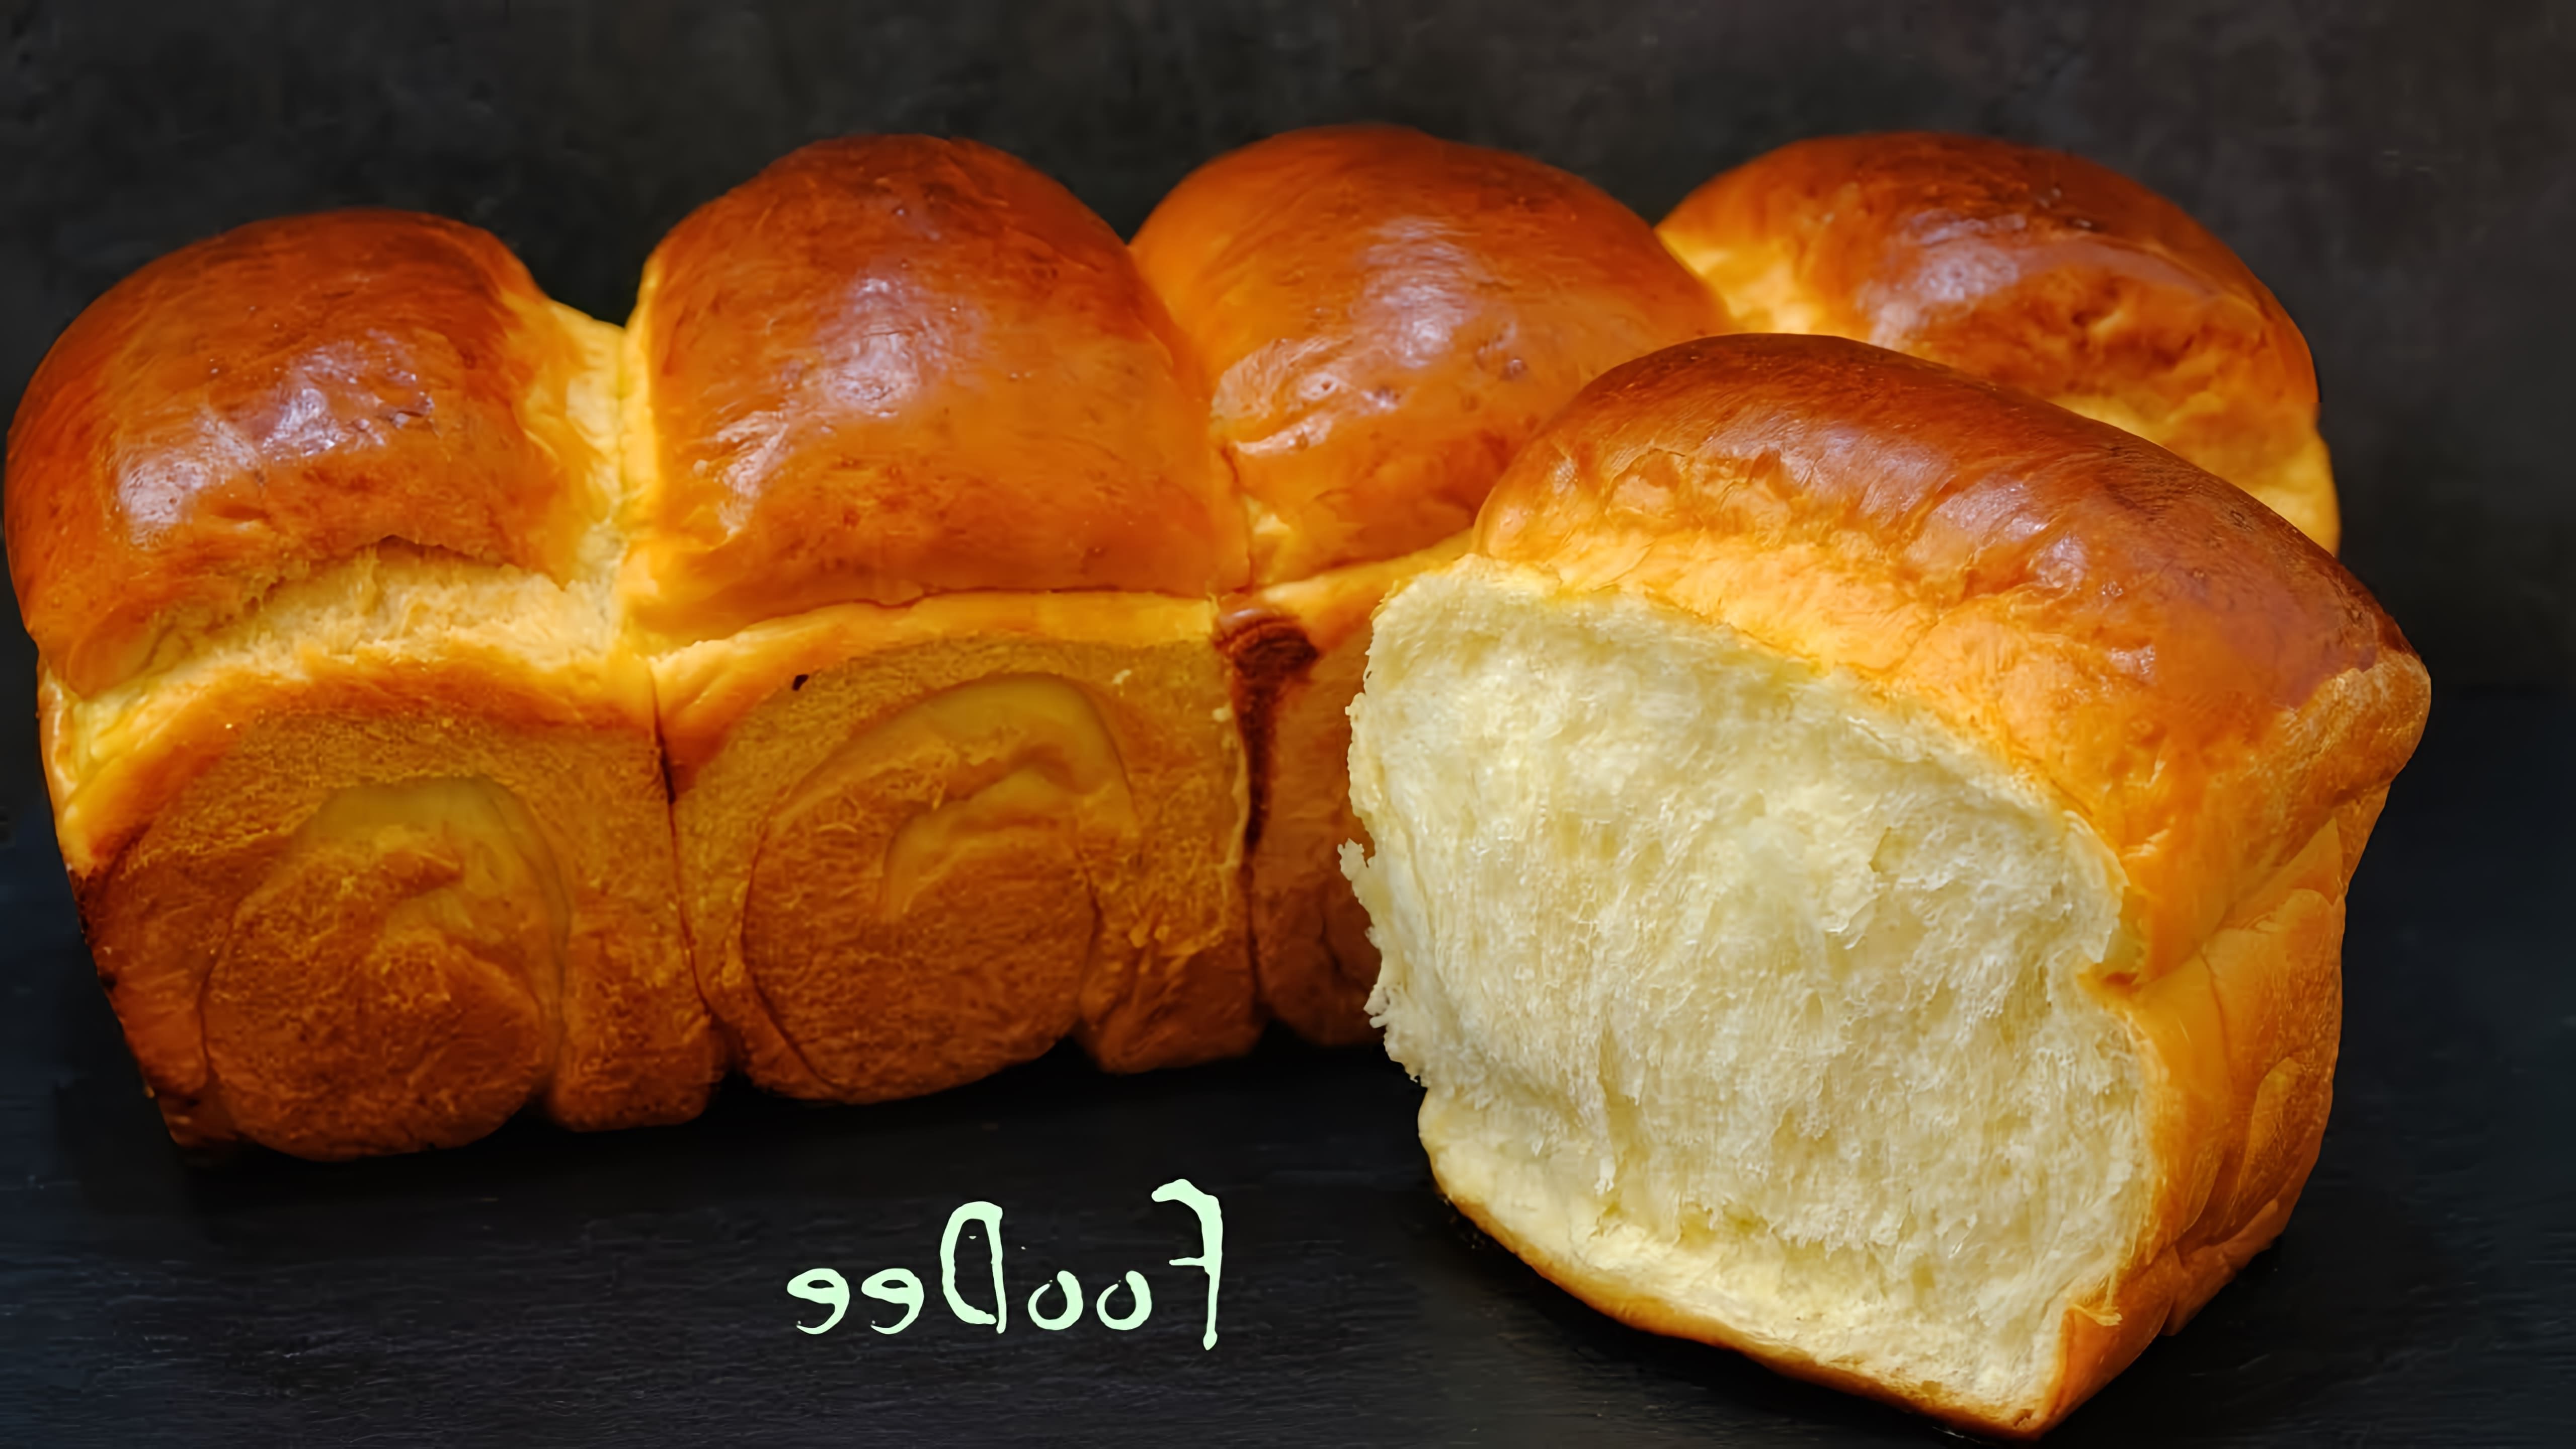 В этом видео демонстрируется процесс приготовления японского молочного хлеба Хоккайдо